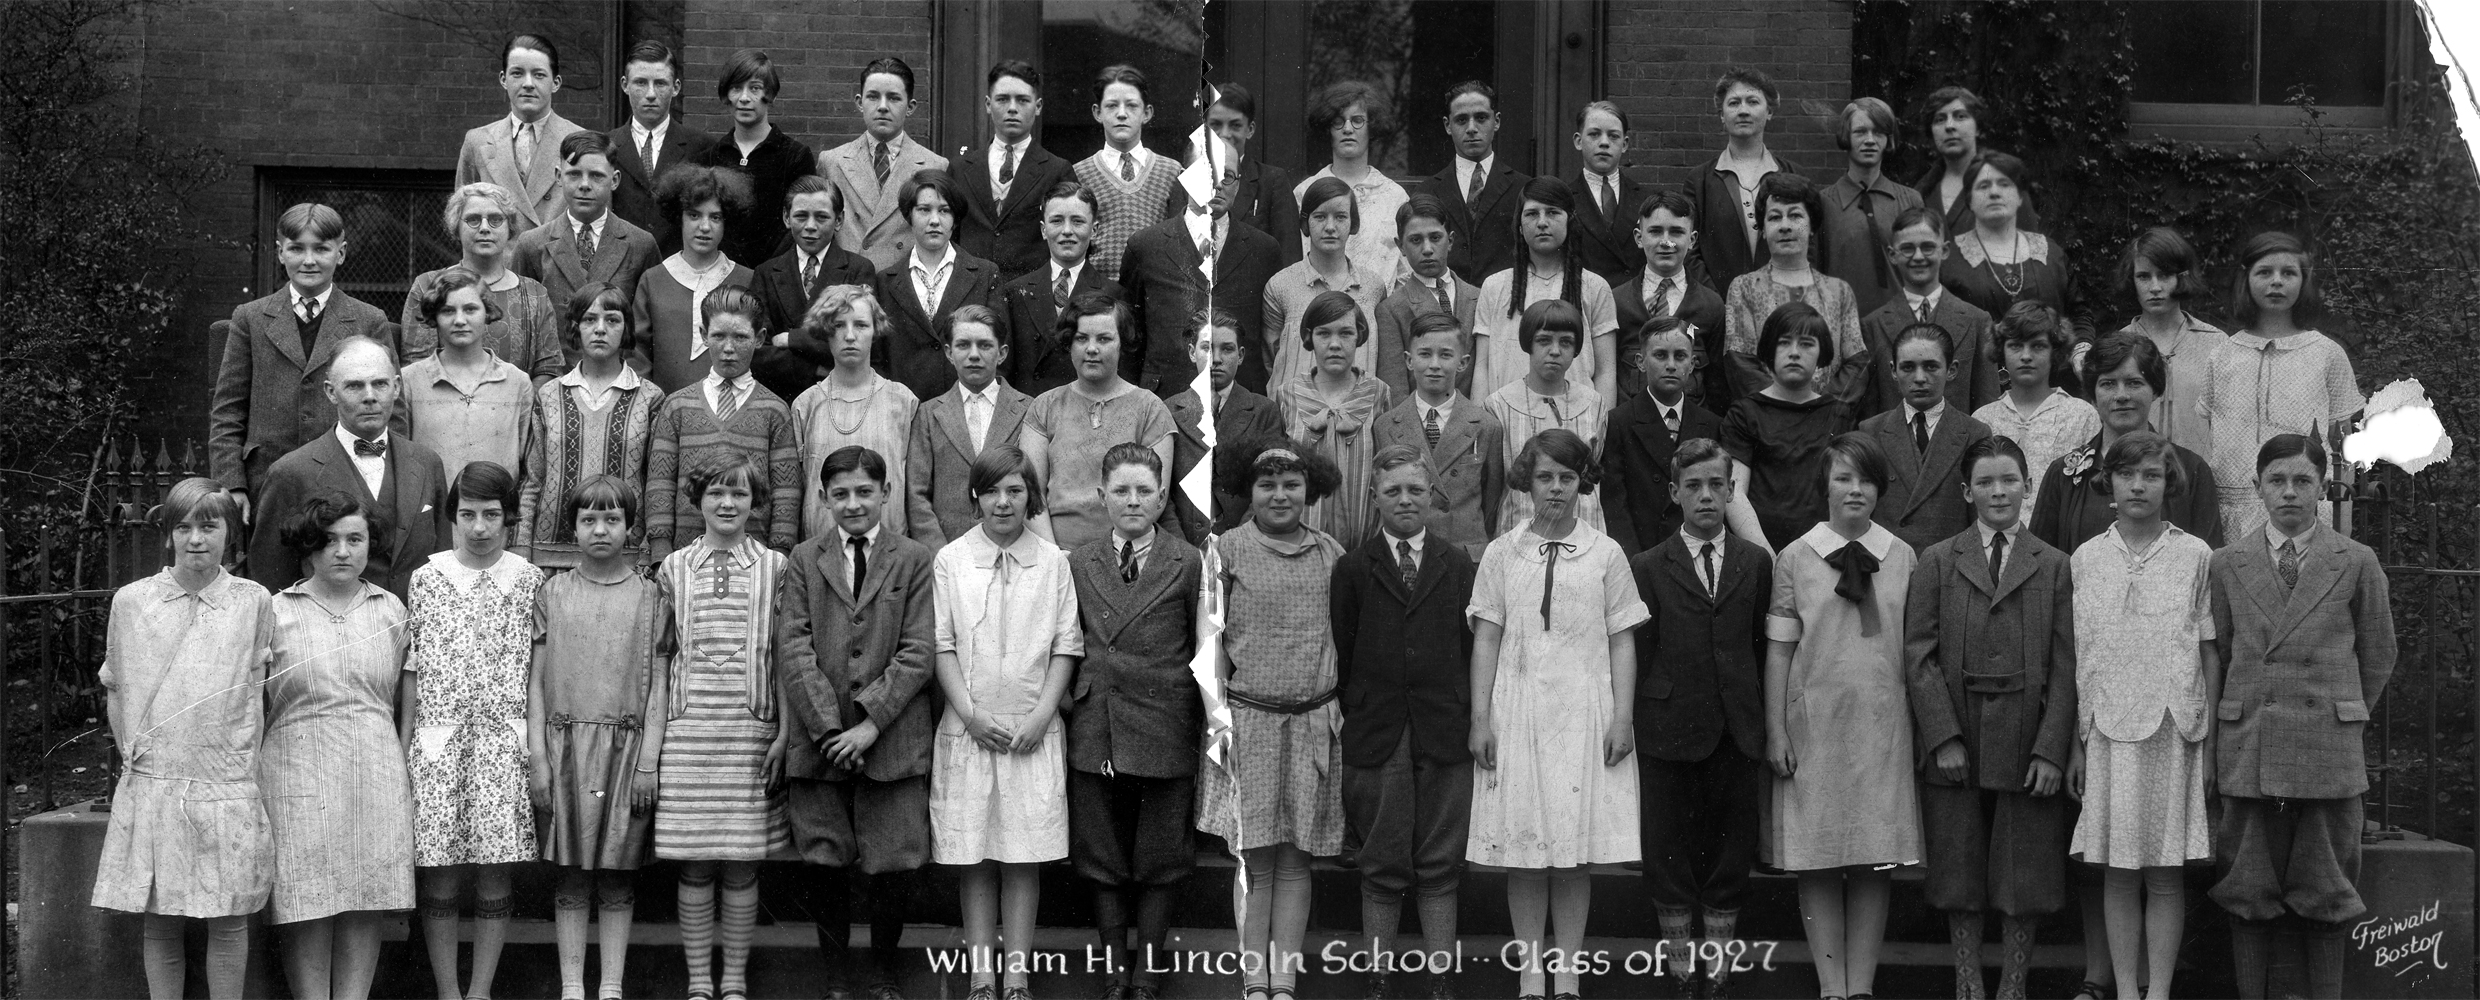 Lincoln School, 1927